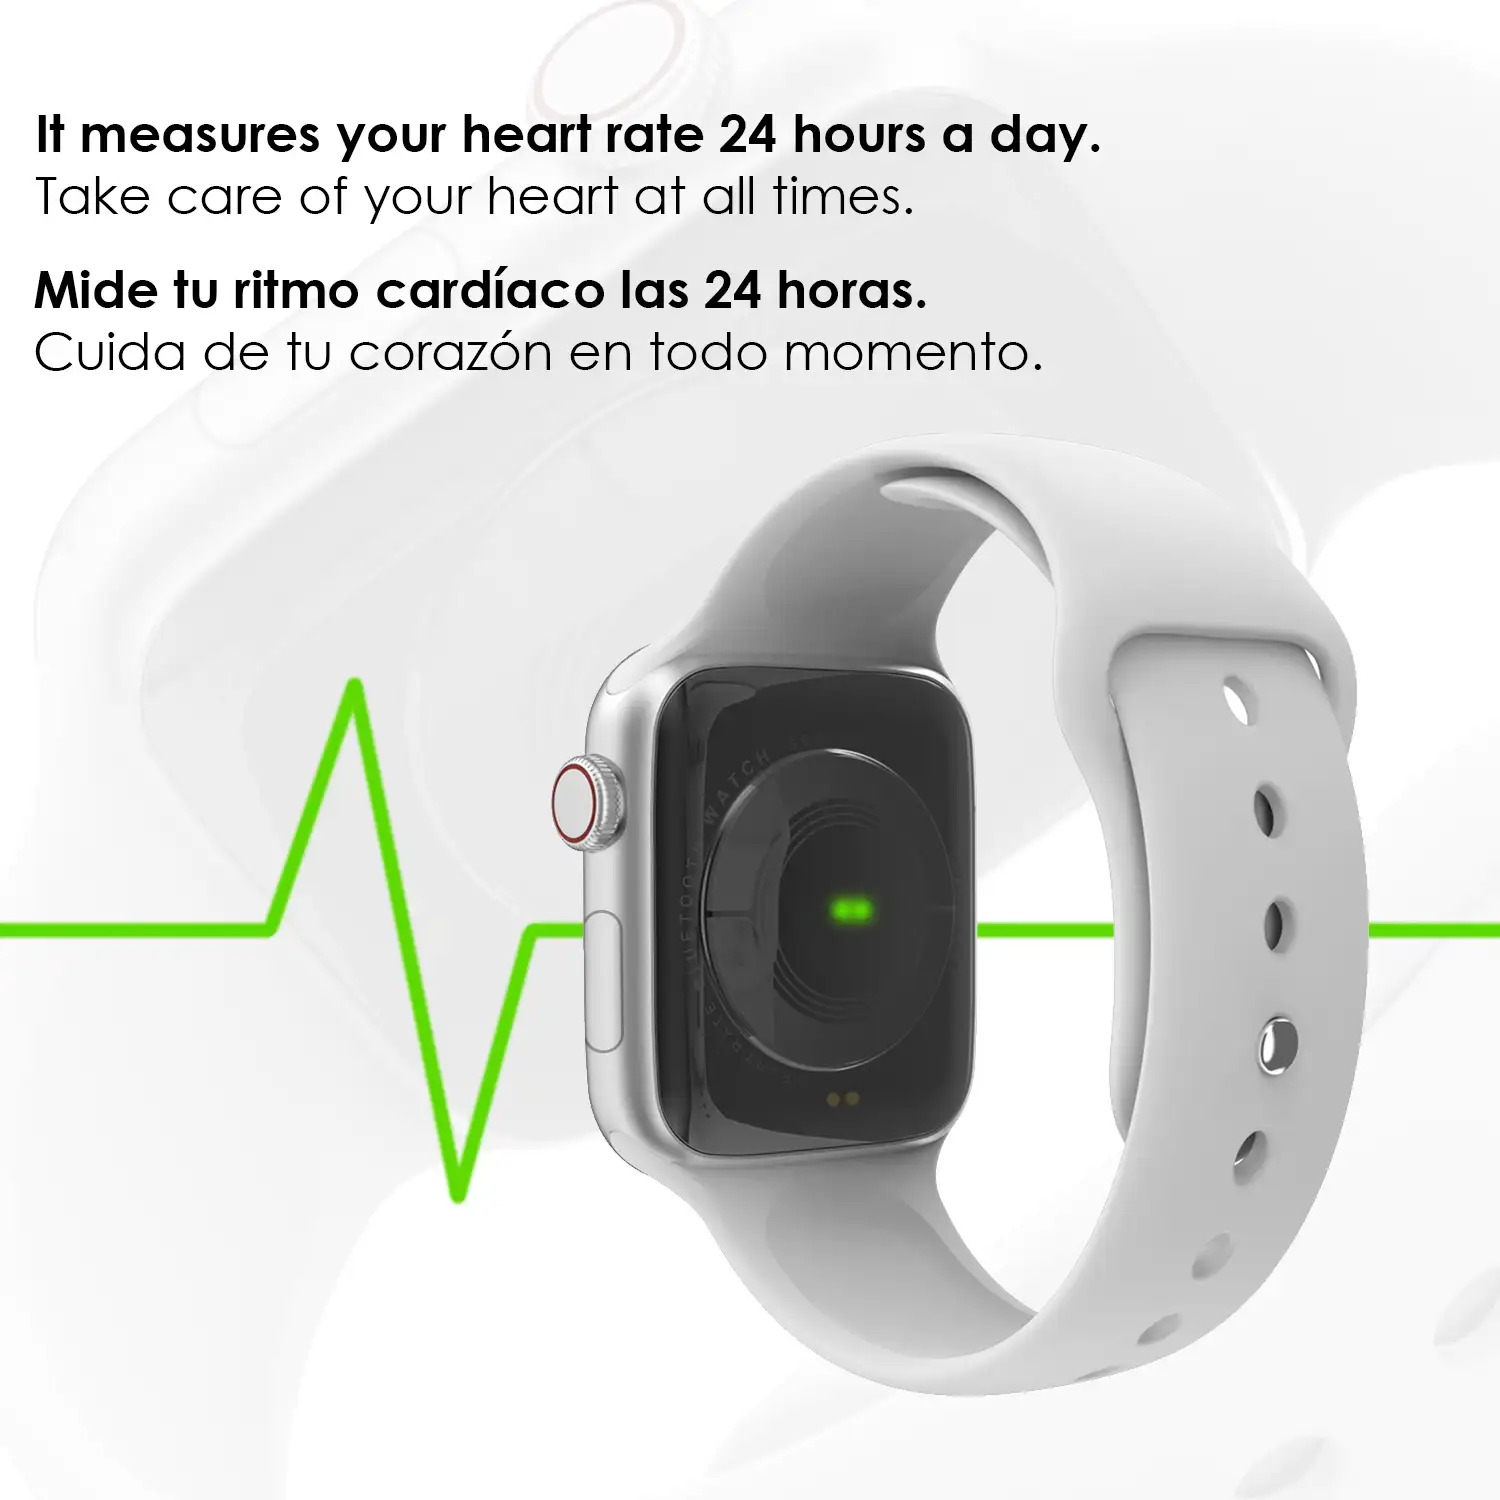 Smartwatch W58 Bluetooth con termómetro, monitor cardiaco y notificaciones.